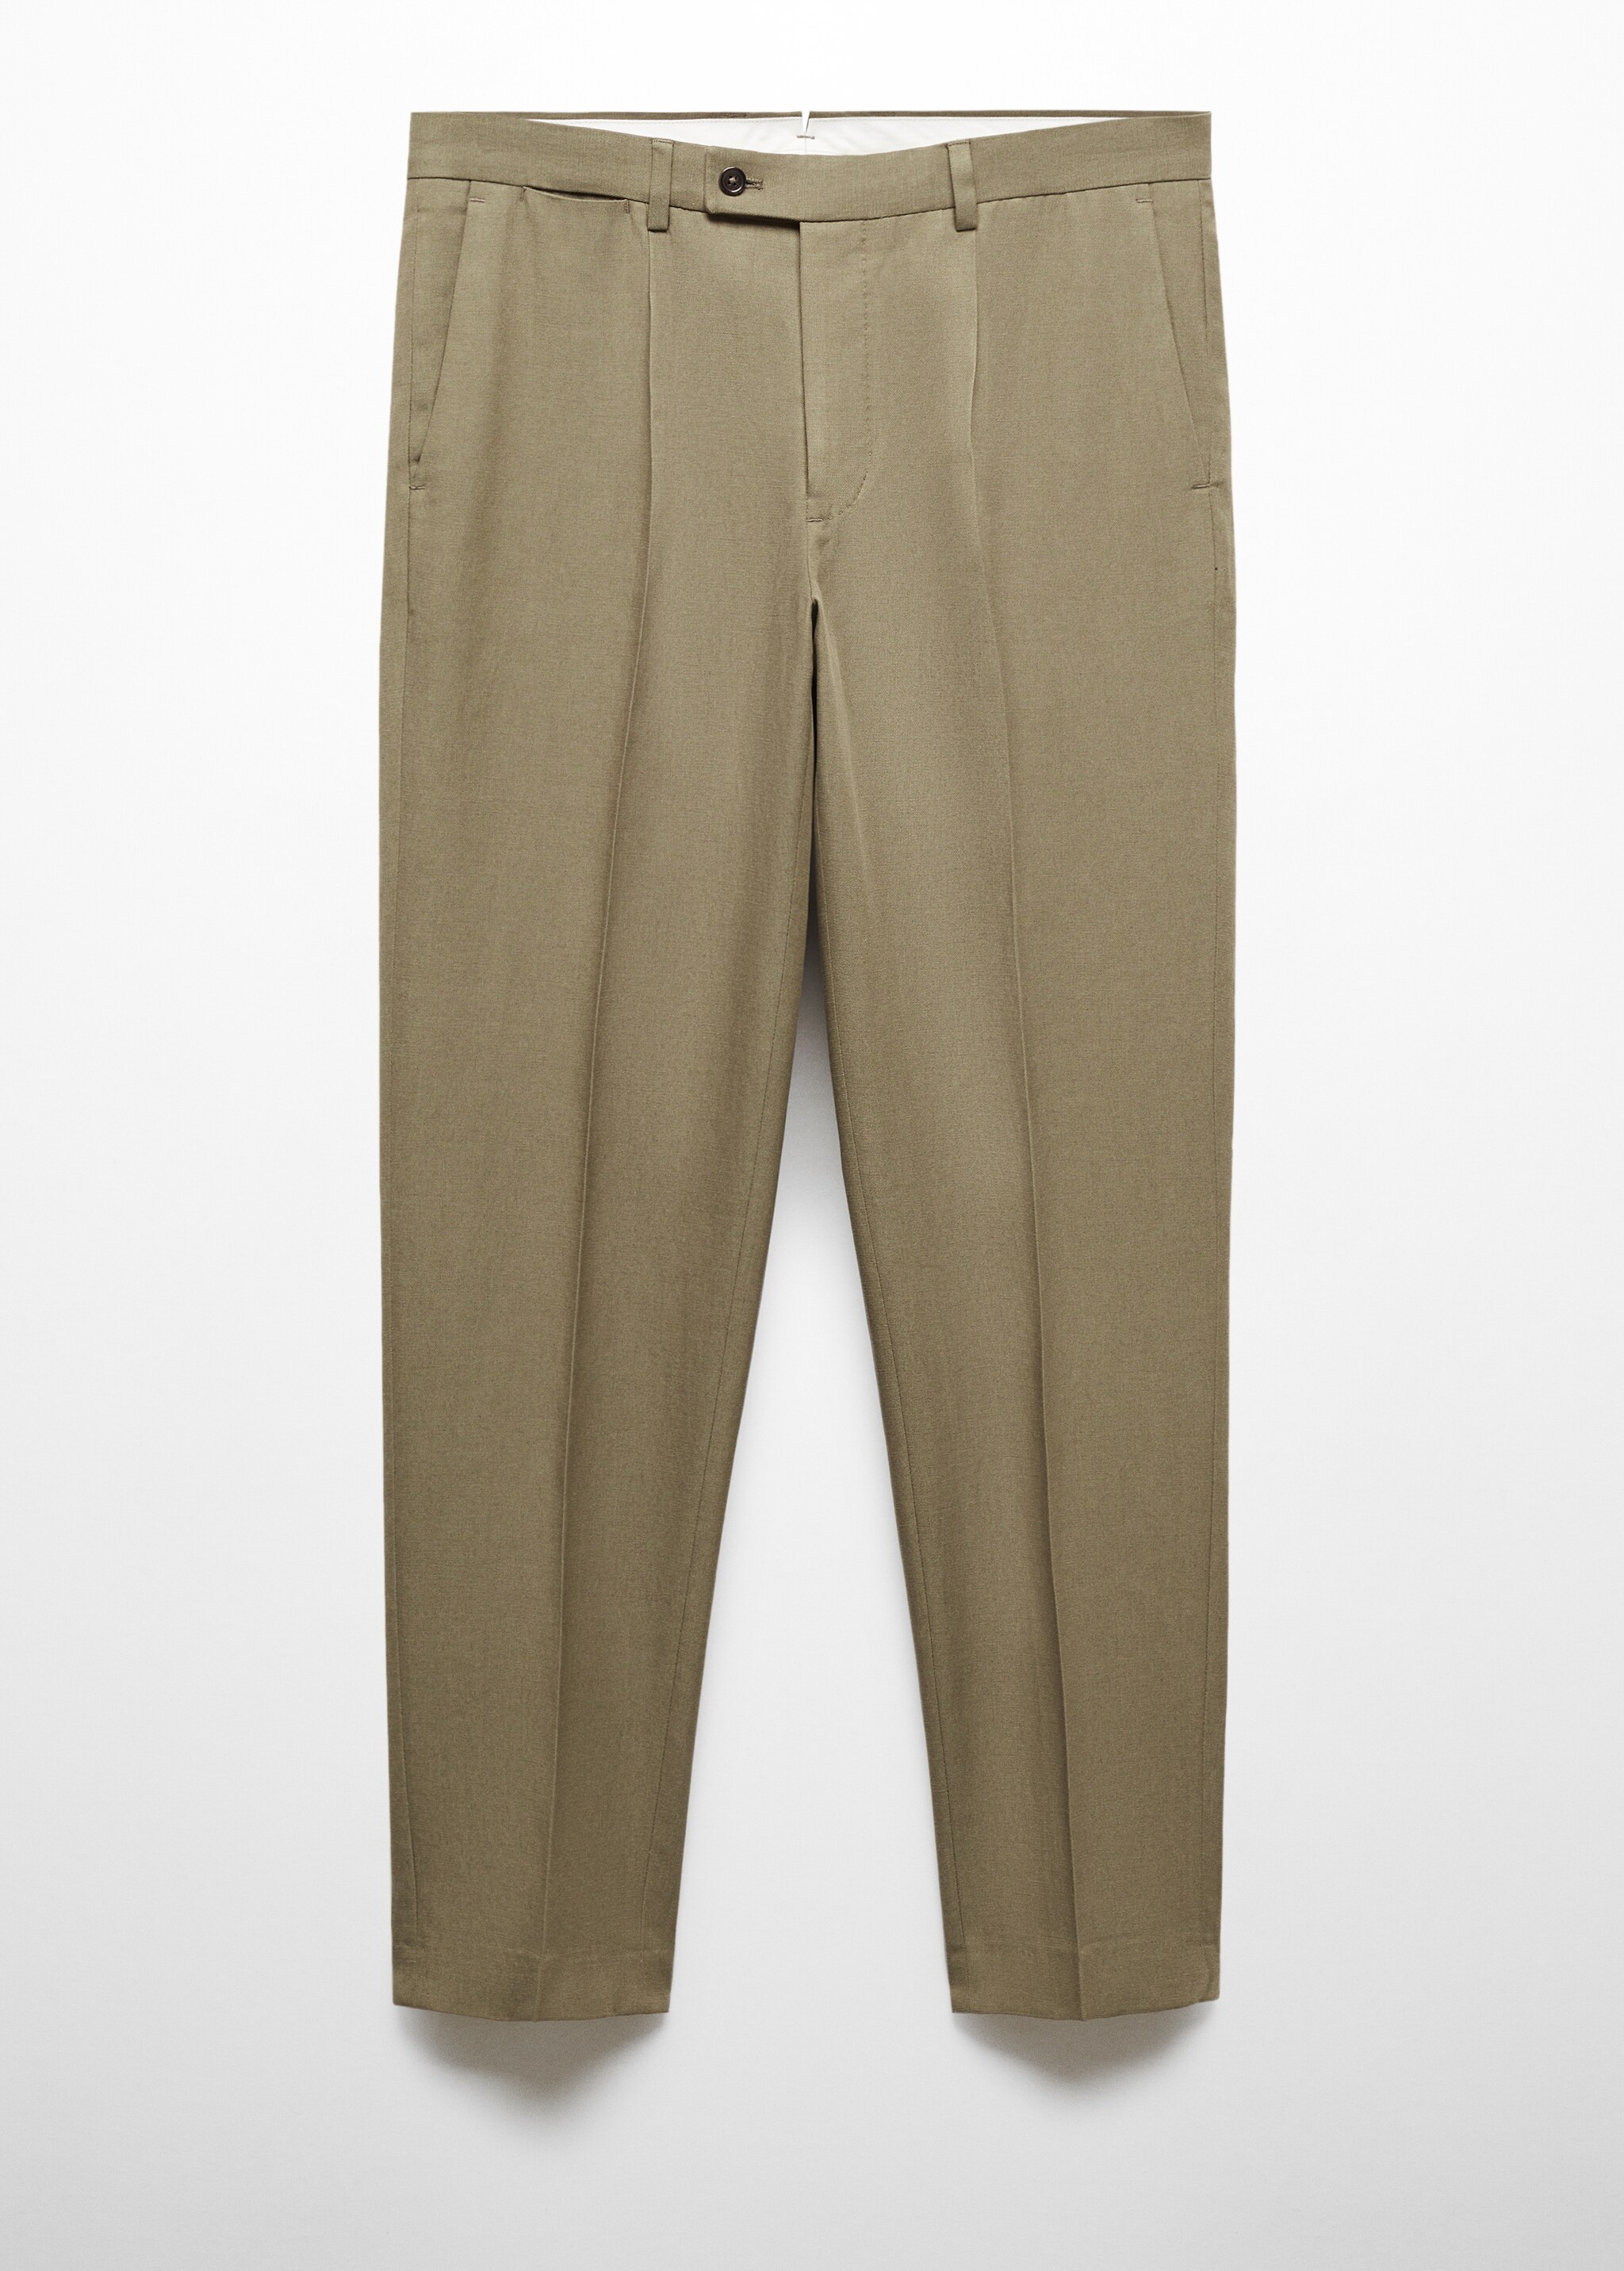 Pantalón traje tencel slim fit pinzas - Artículo sin modelo